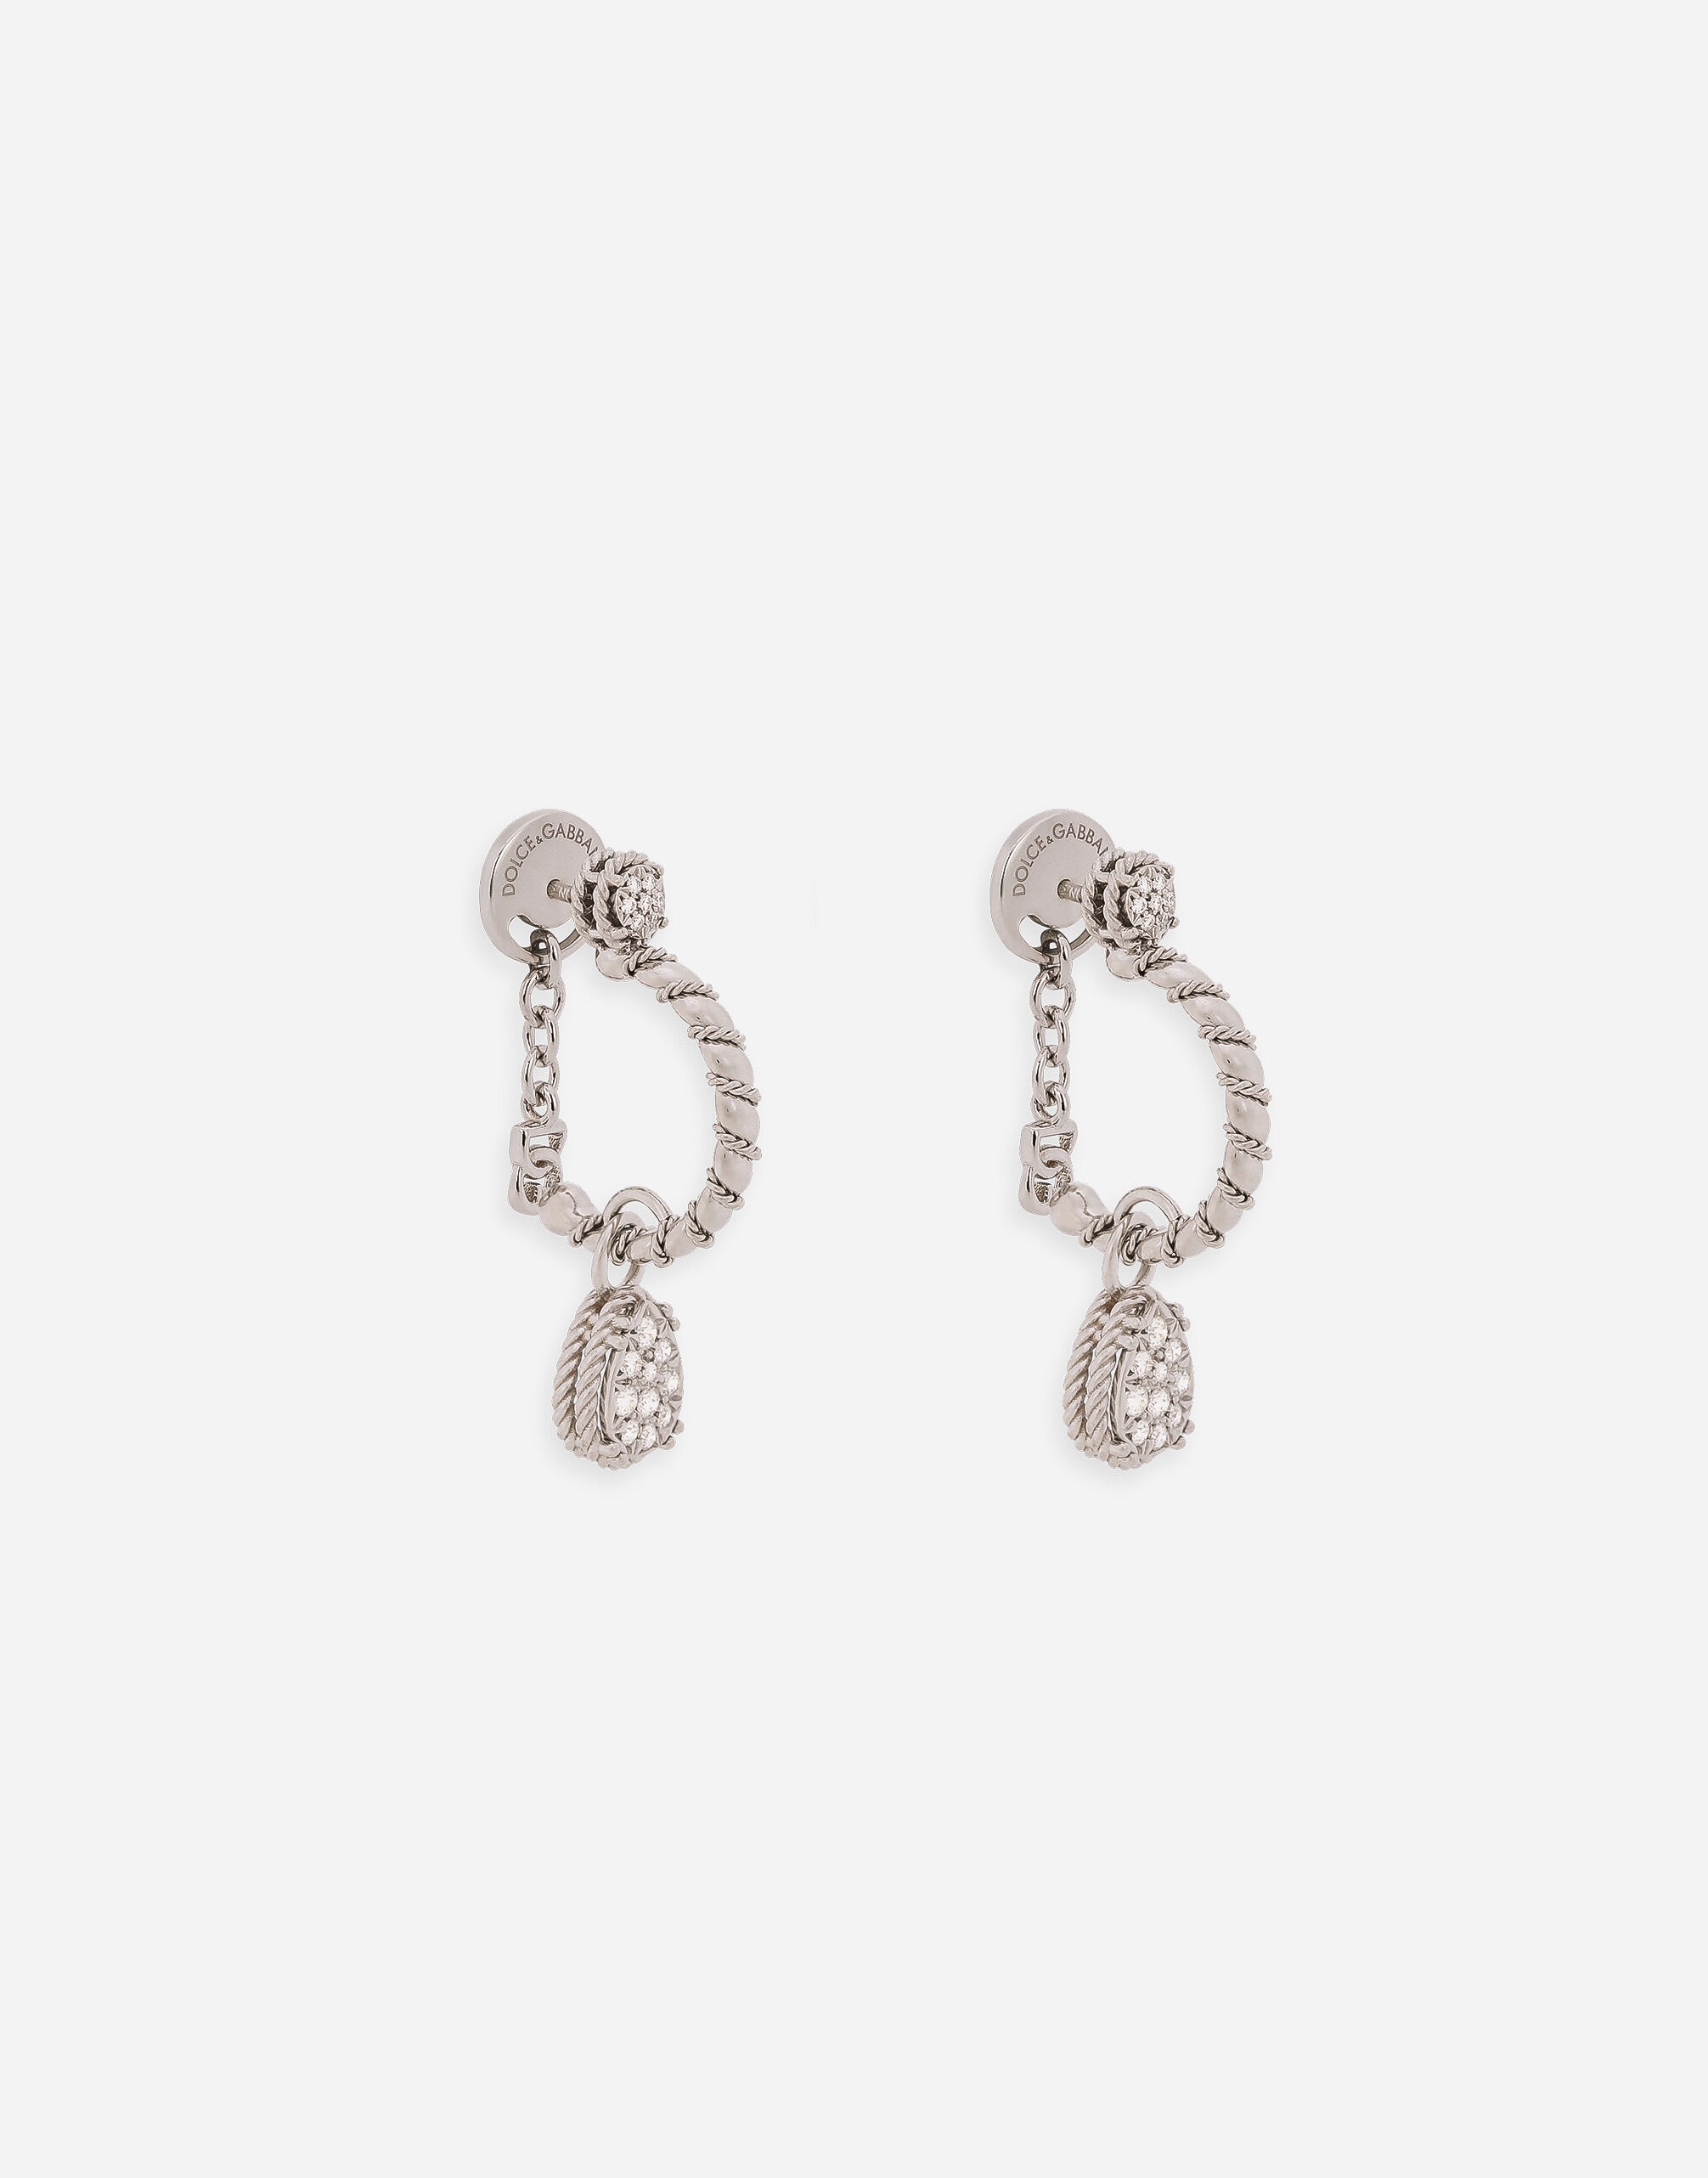 Easy Diamond earrings in white gold 18kt and diamonds pavé - 3